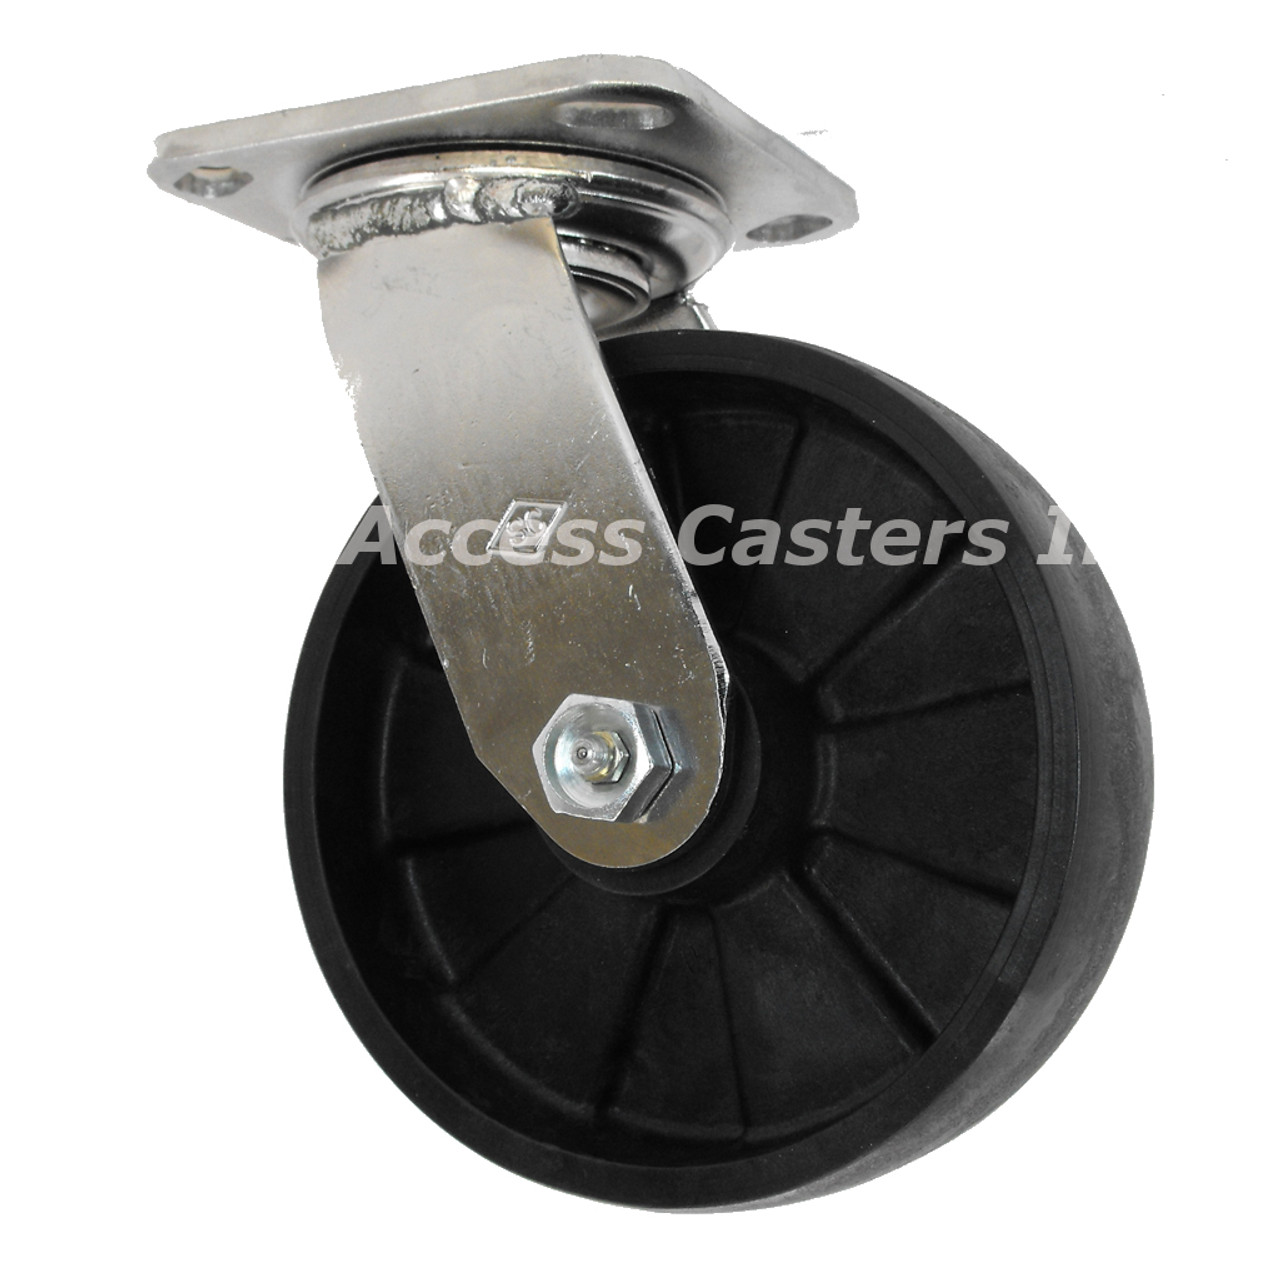 6DSSMAS Stainless Steel Swivel Caster with Glass-Filled Nylon Wheel